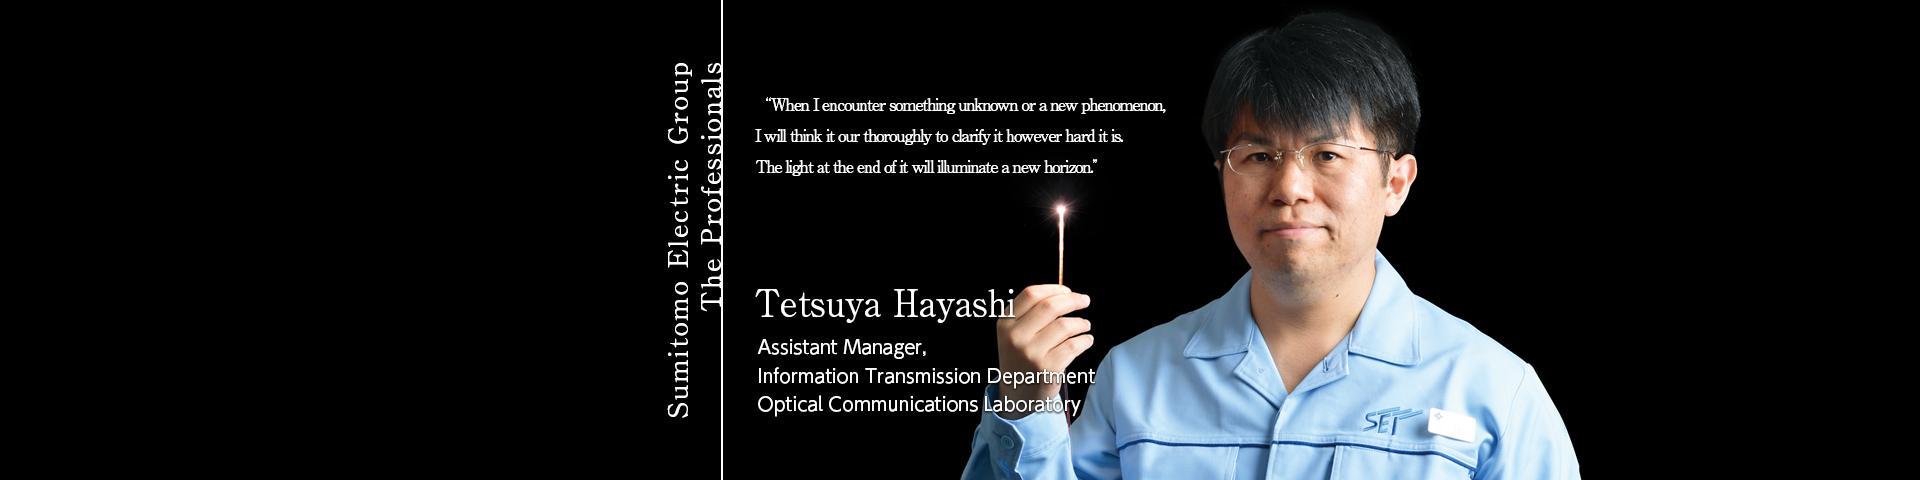 Tetsuya Hayashi